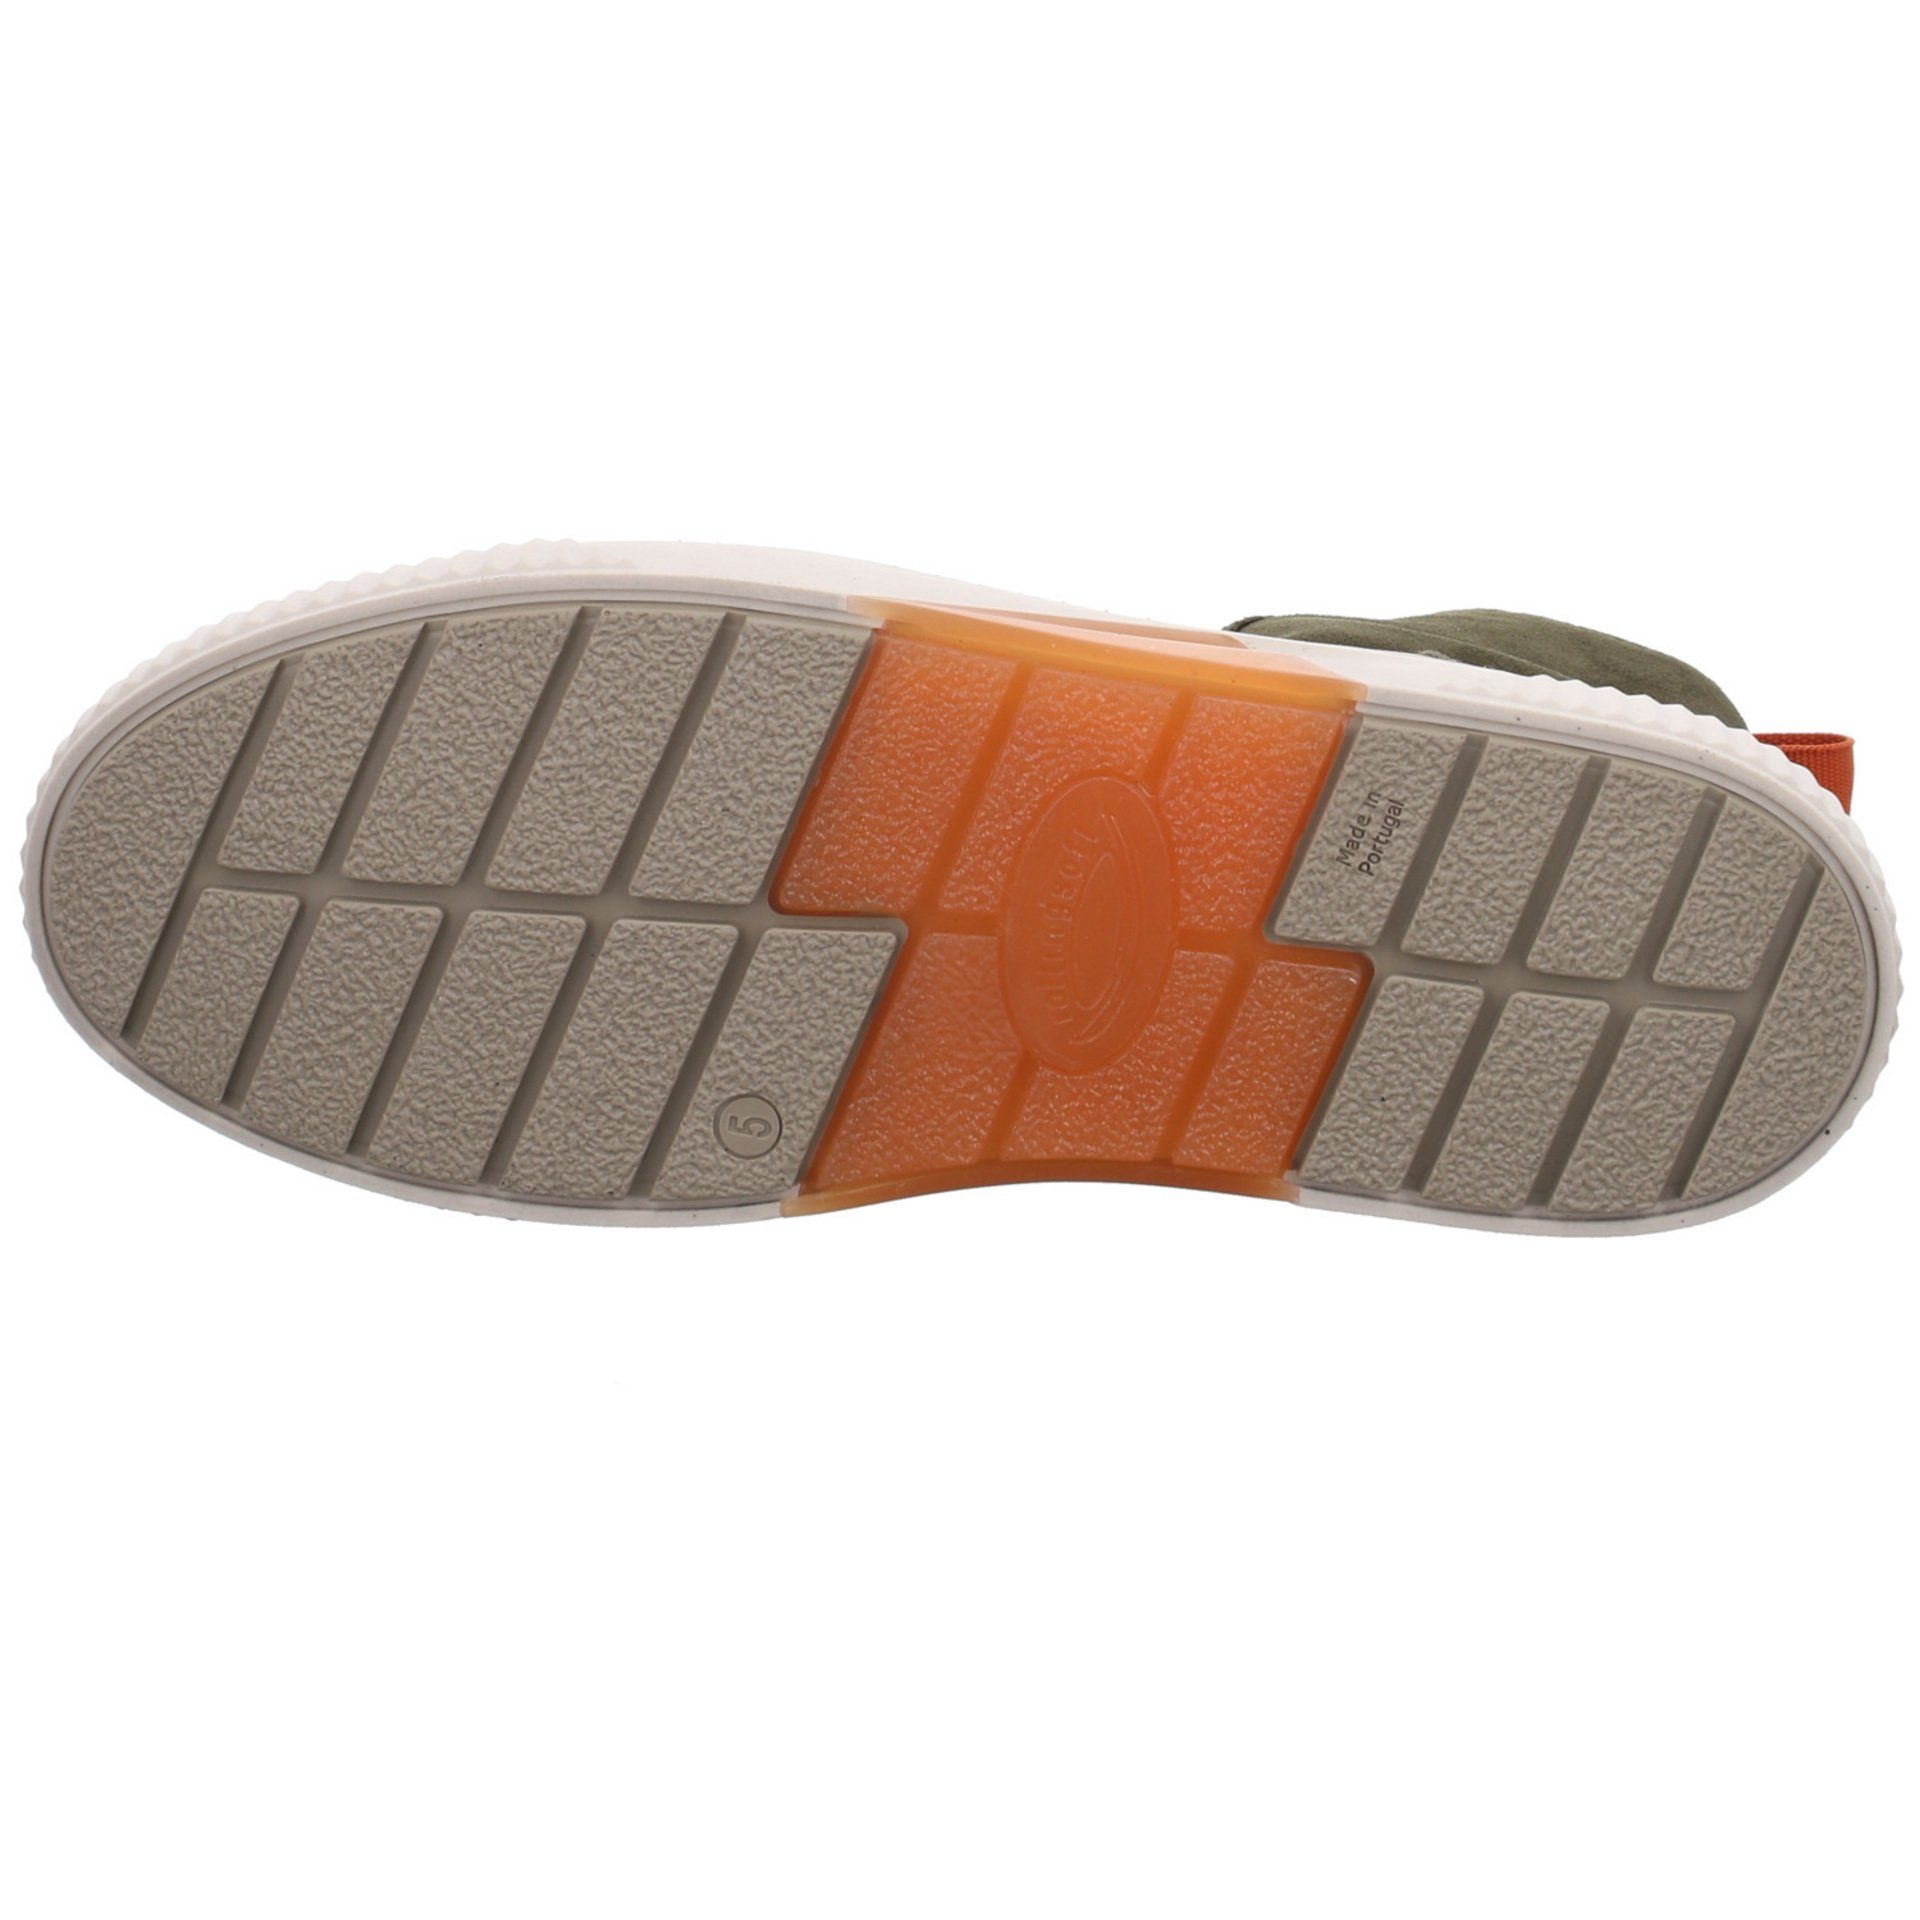 Stiefel Grün Gabor (bosco/orange) Stiefel Klassisch Veloursleder Schuhe Boots Elegant Damen